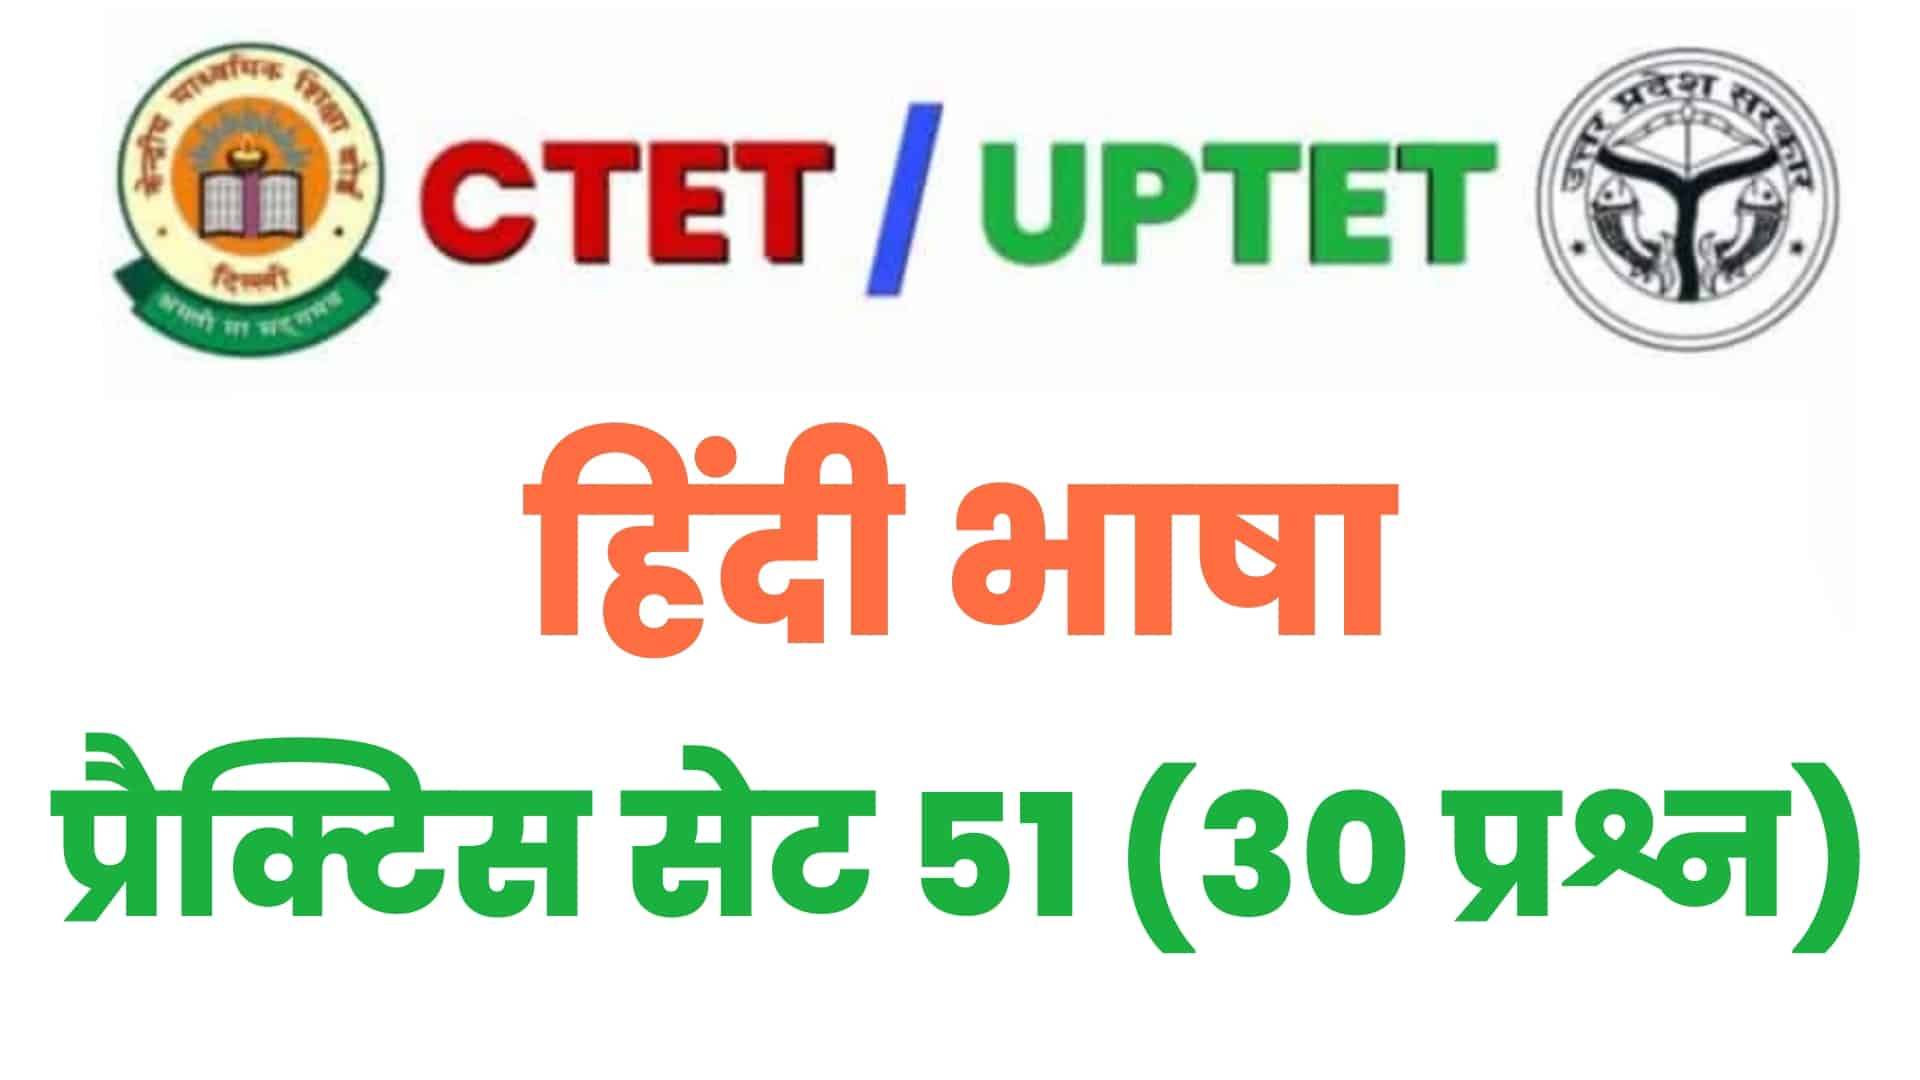 UPTET/CTET हिंदी भाषा प्रैक्टिस सेट 51 : परीक्षा में पूछे गए विगत वर्षों के इन 30 महत्वपूर्ण प्रश्नों का करें अध्ययन